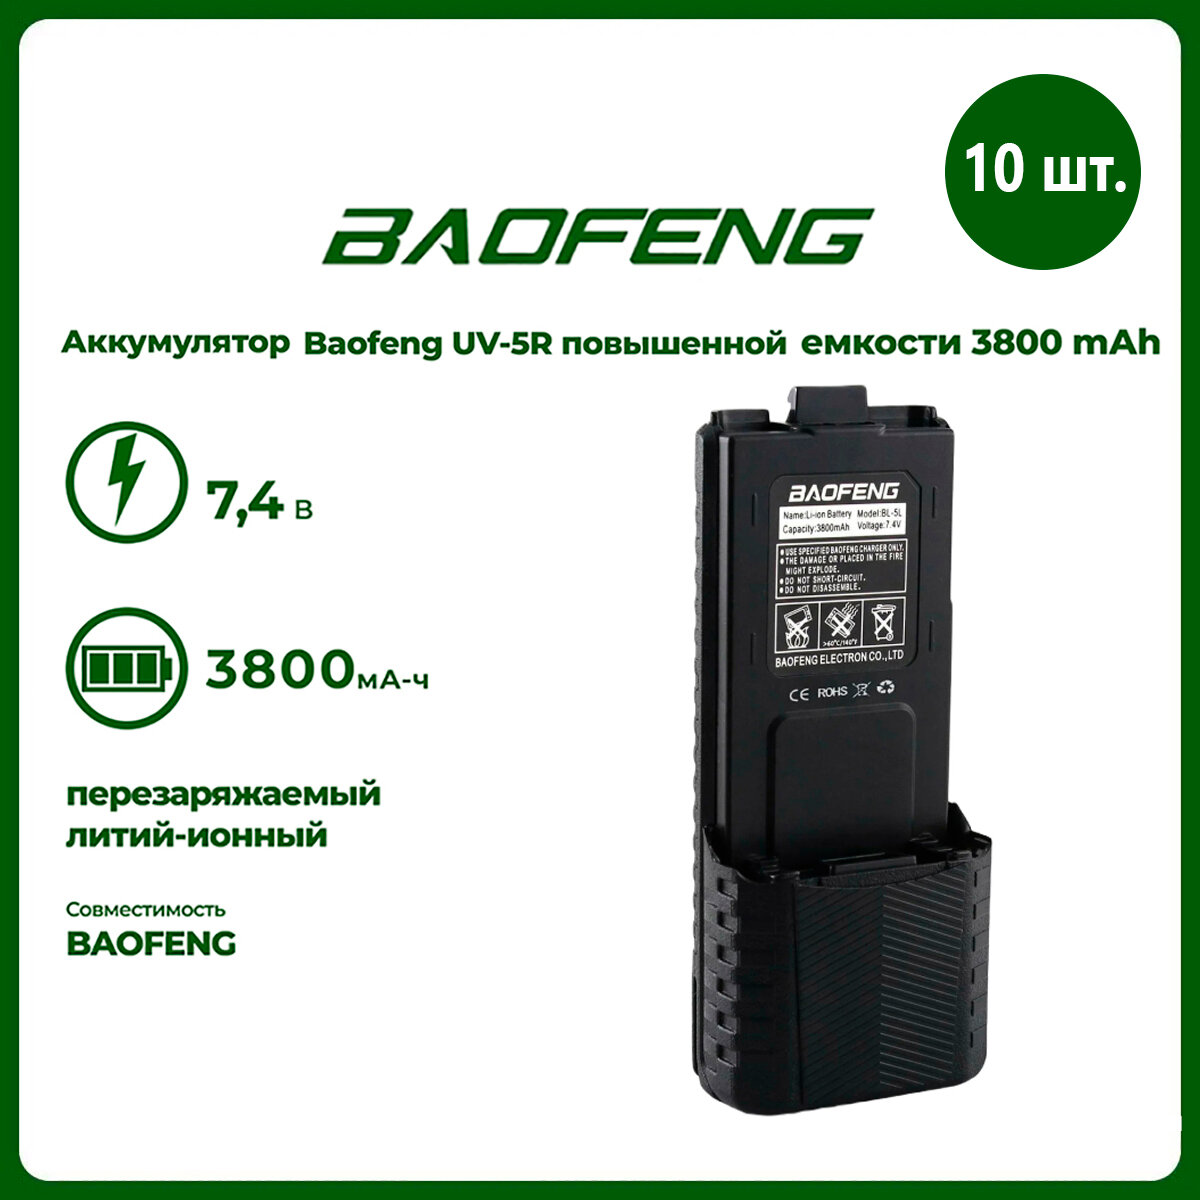 Аккумулятор для рации Baofeng UV-5R повышенной емкости 3800 mAh комплект 10 шт